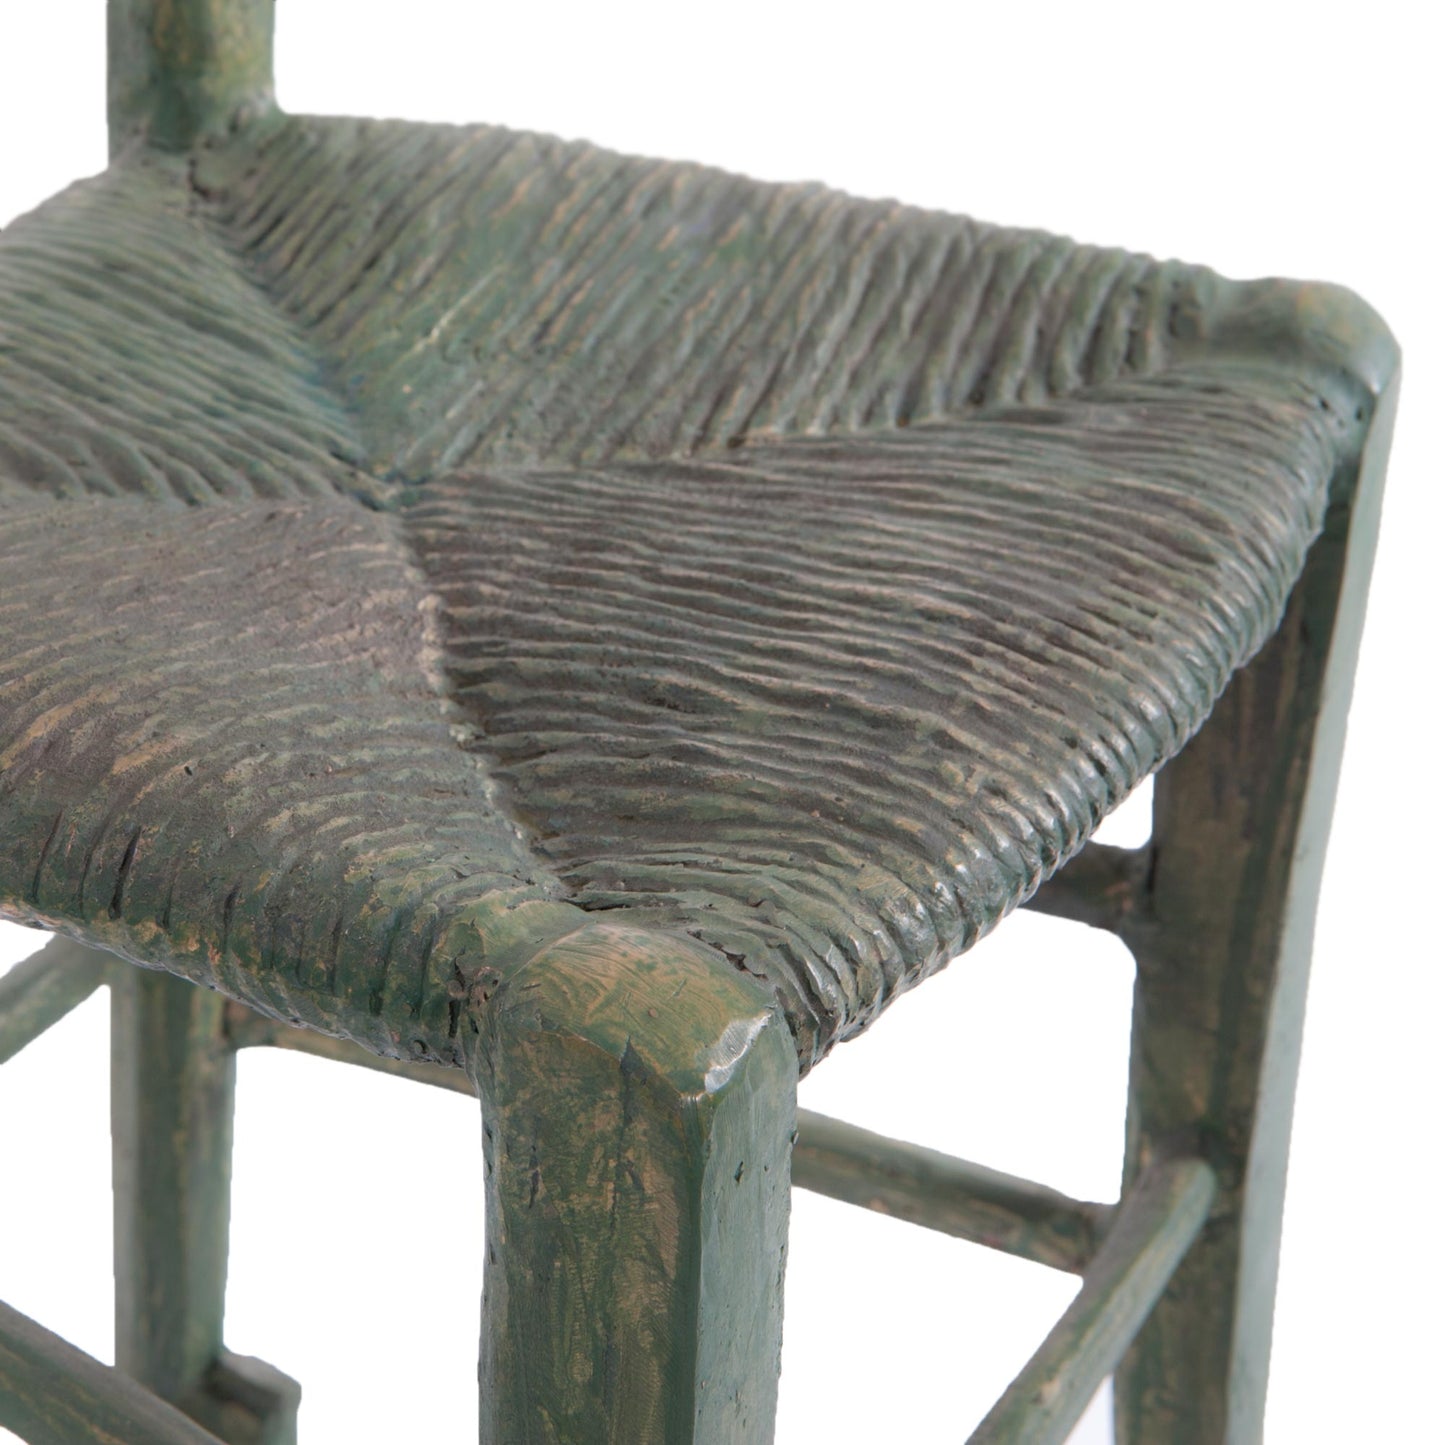 Sandro Chia Sculptural Chair